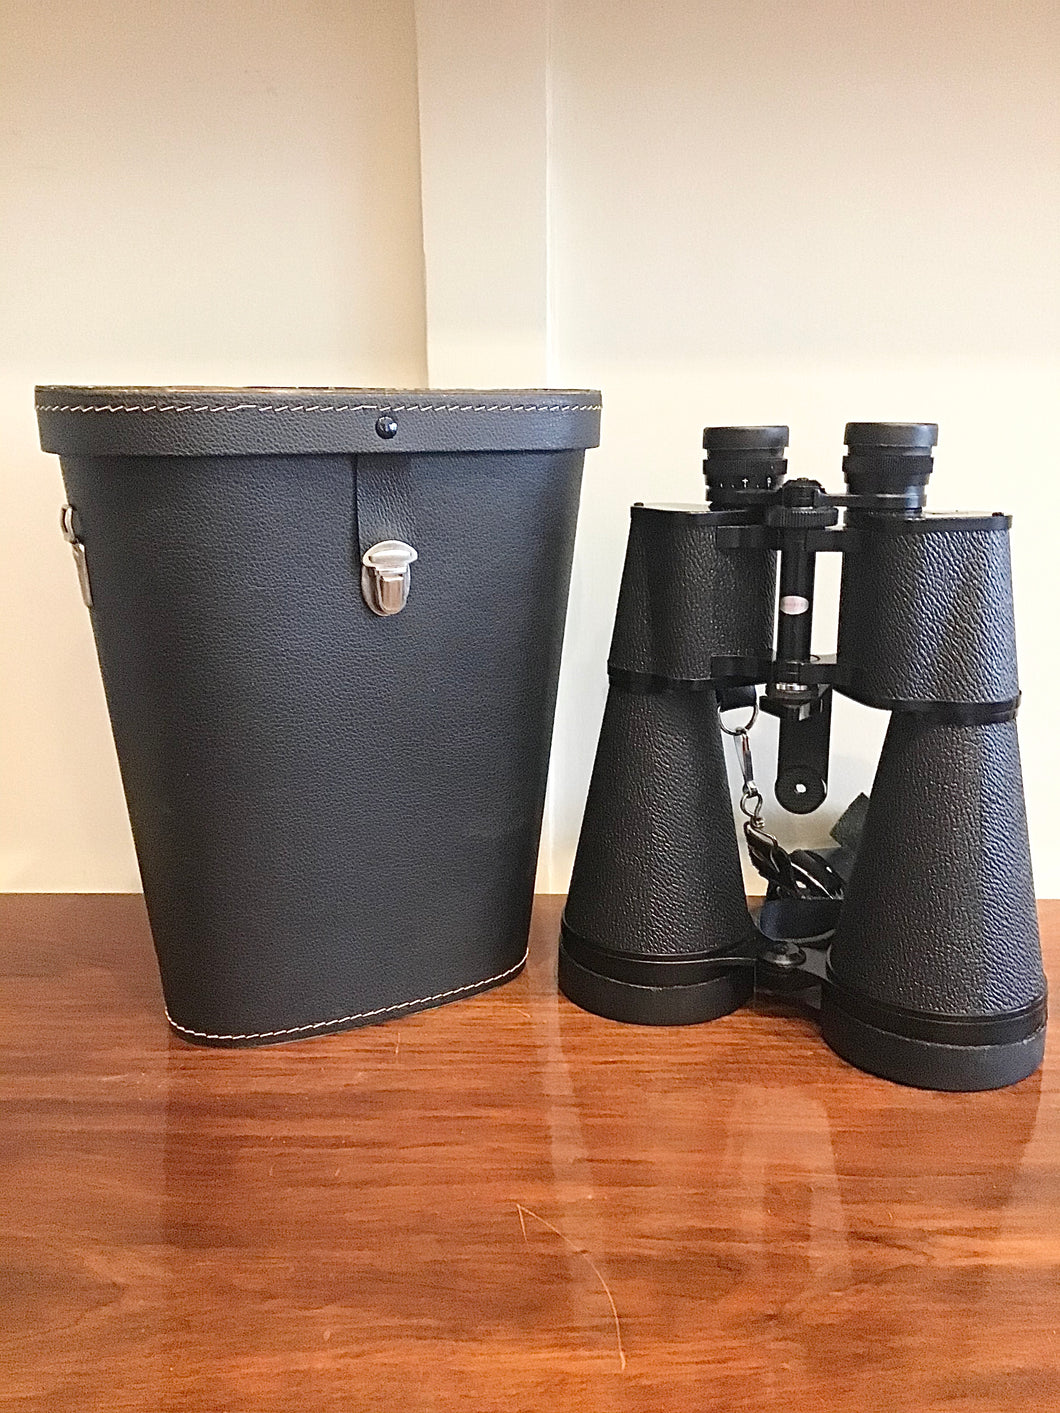 Comet King 11 x 80 Astronomical Binoculars in Case